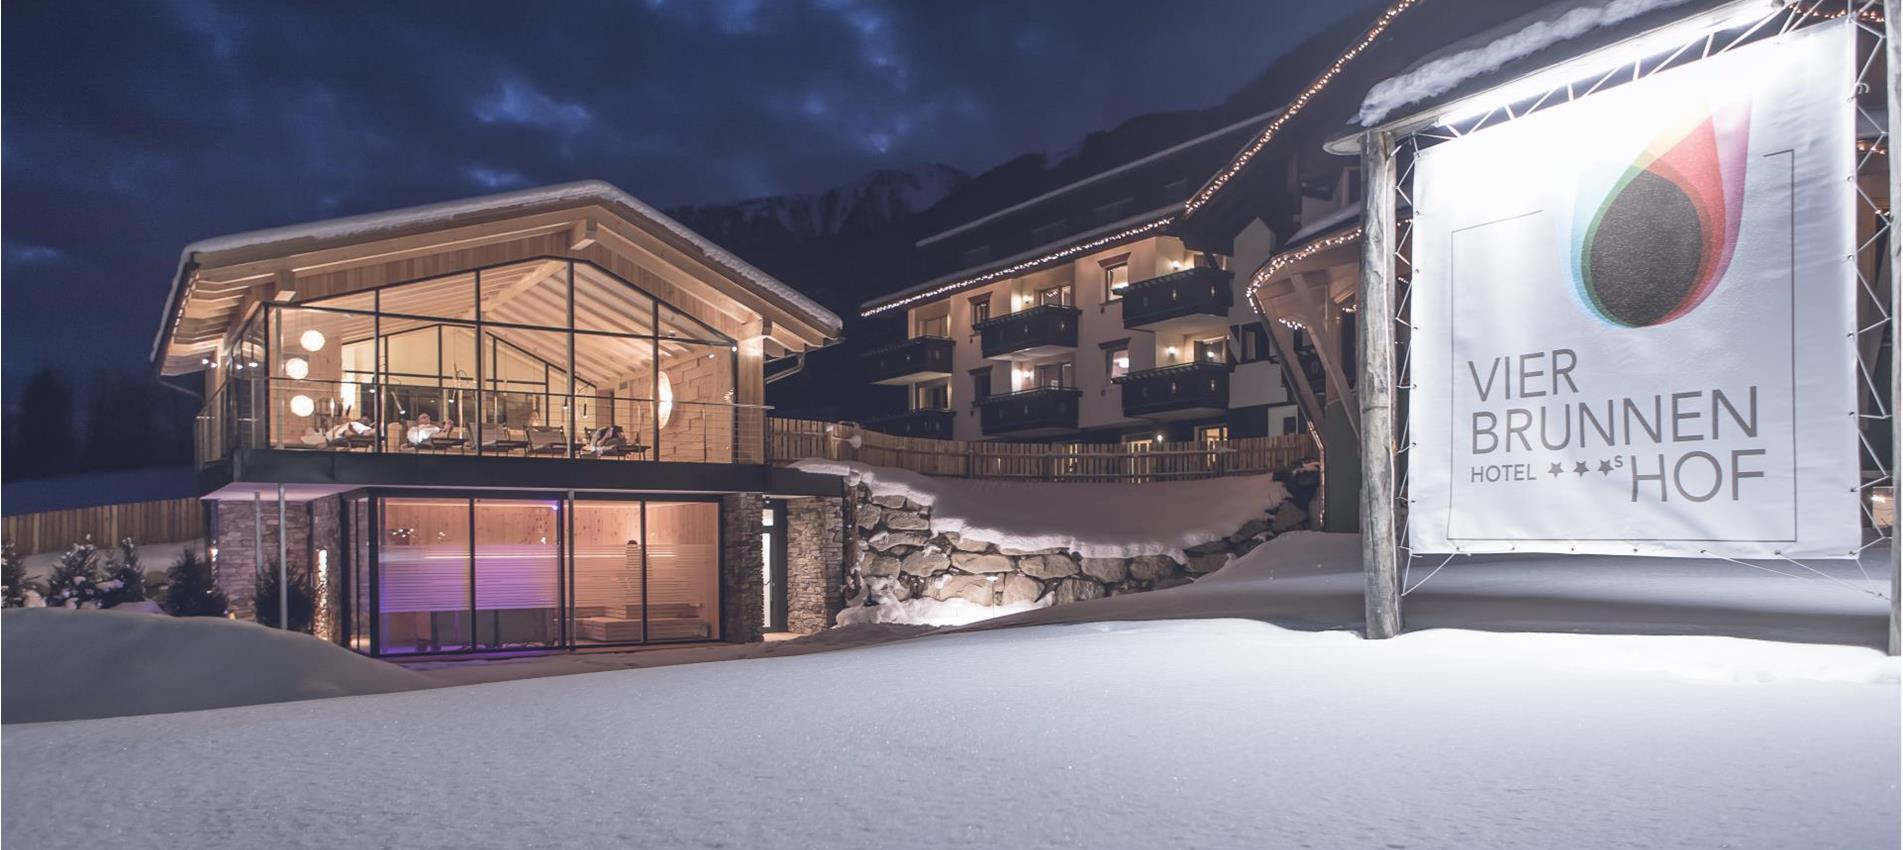 Hotel Vierbrunnenhof mit Spa in einer Winternacht